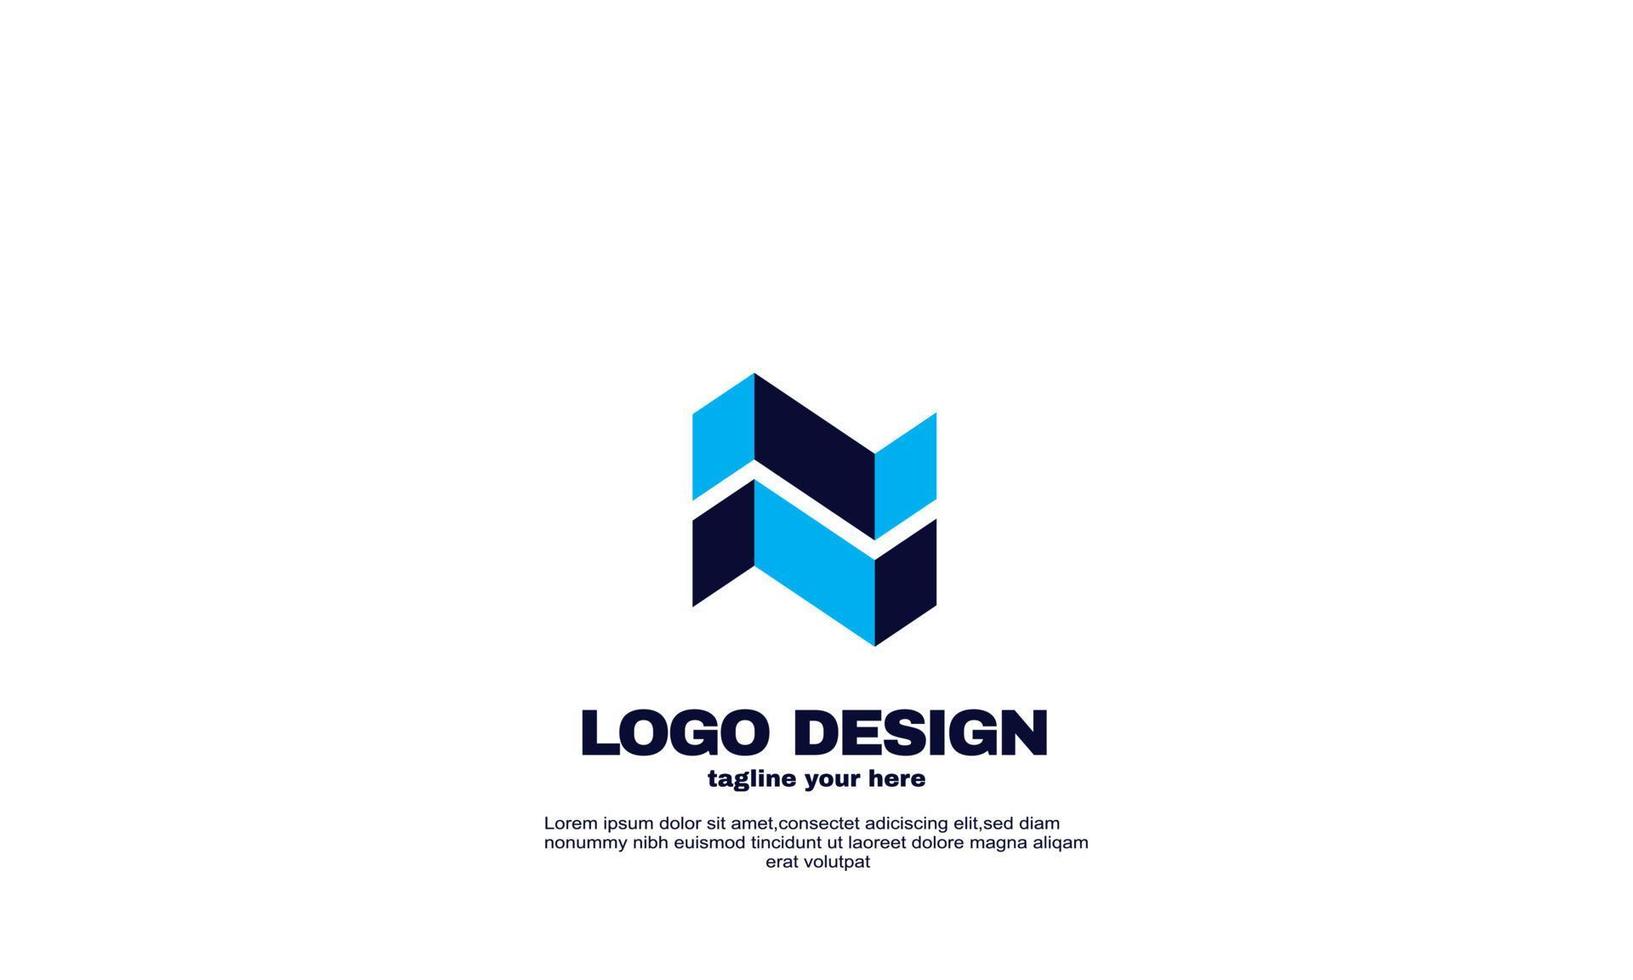 fantastica idea creativa migliore elegante azienda logo aziendale colore blu navy vettore